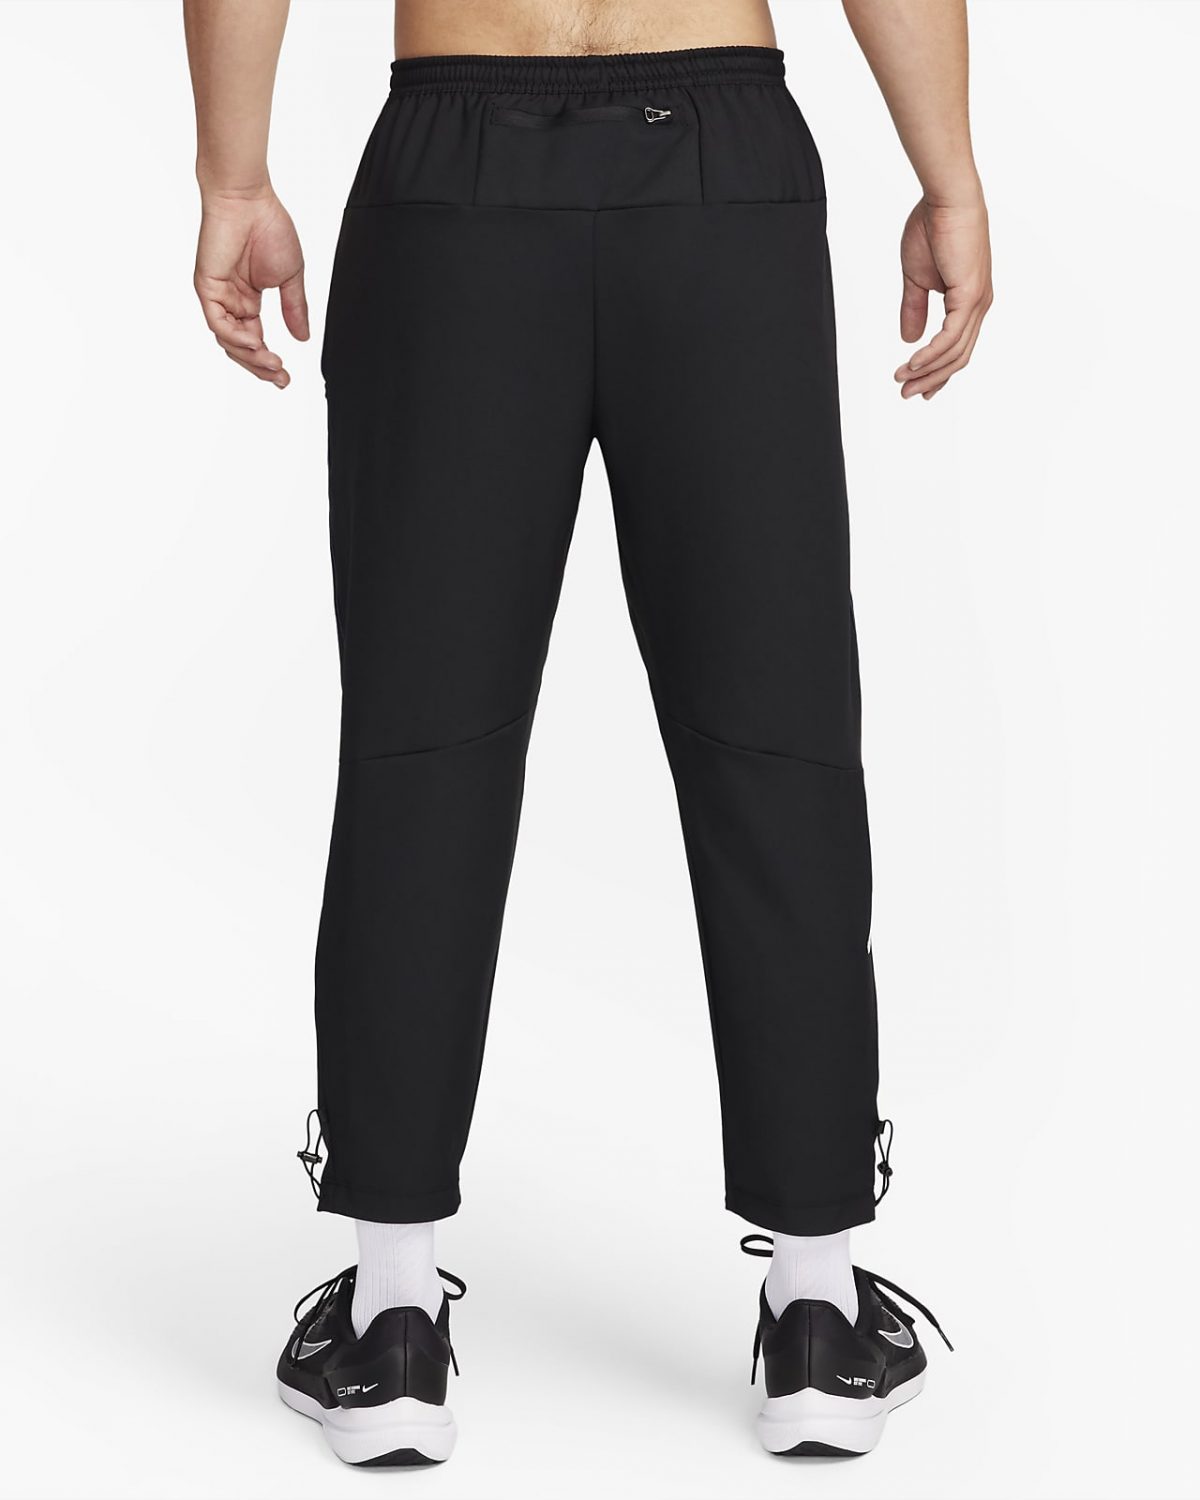 Мужские брюки Nike Challenger Track Club черные фотография